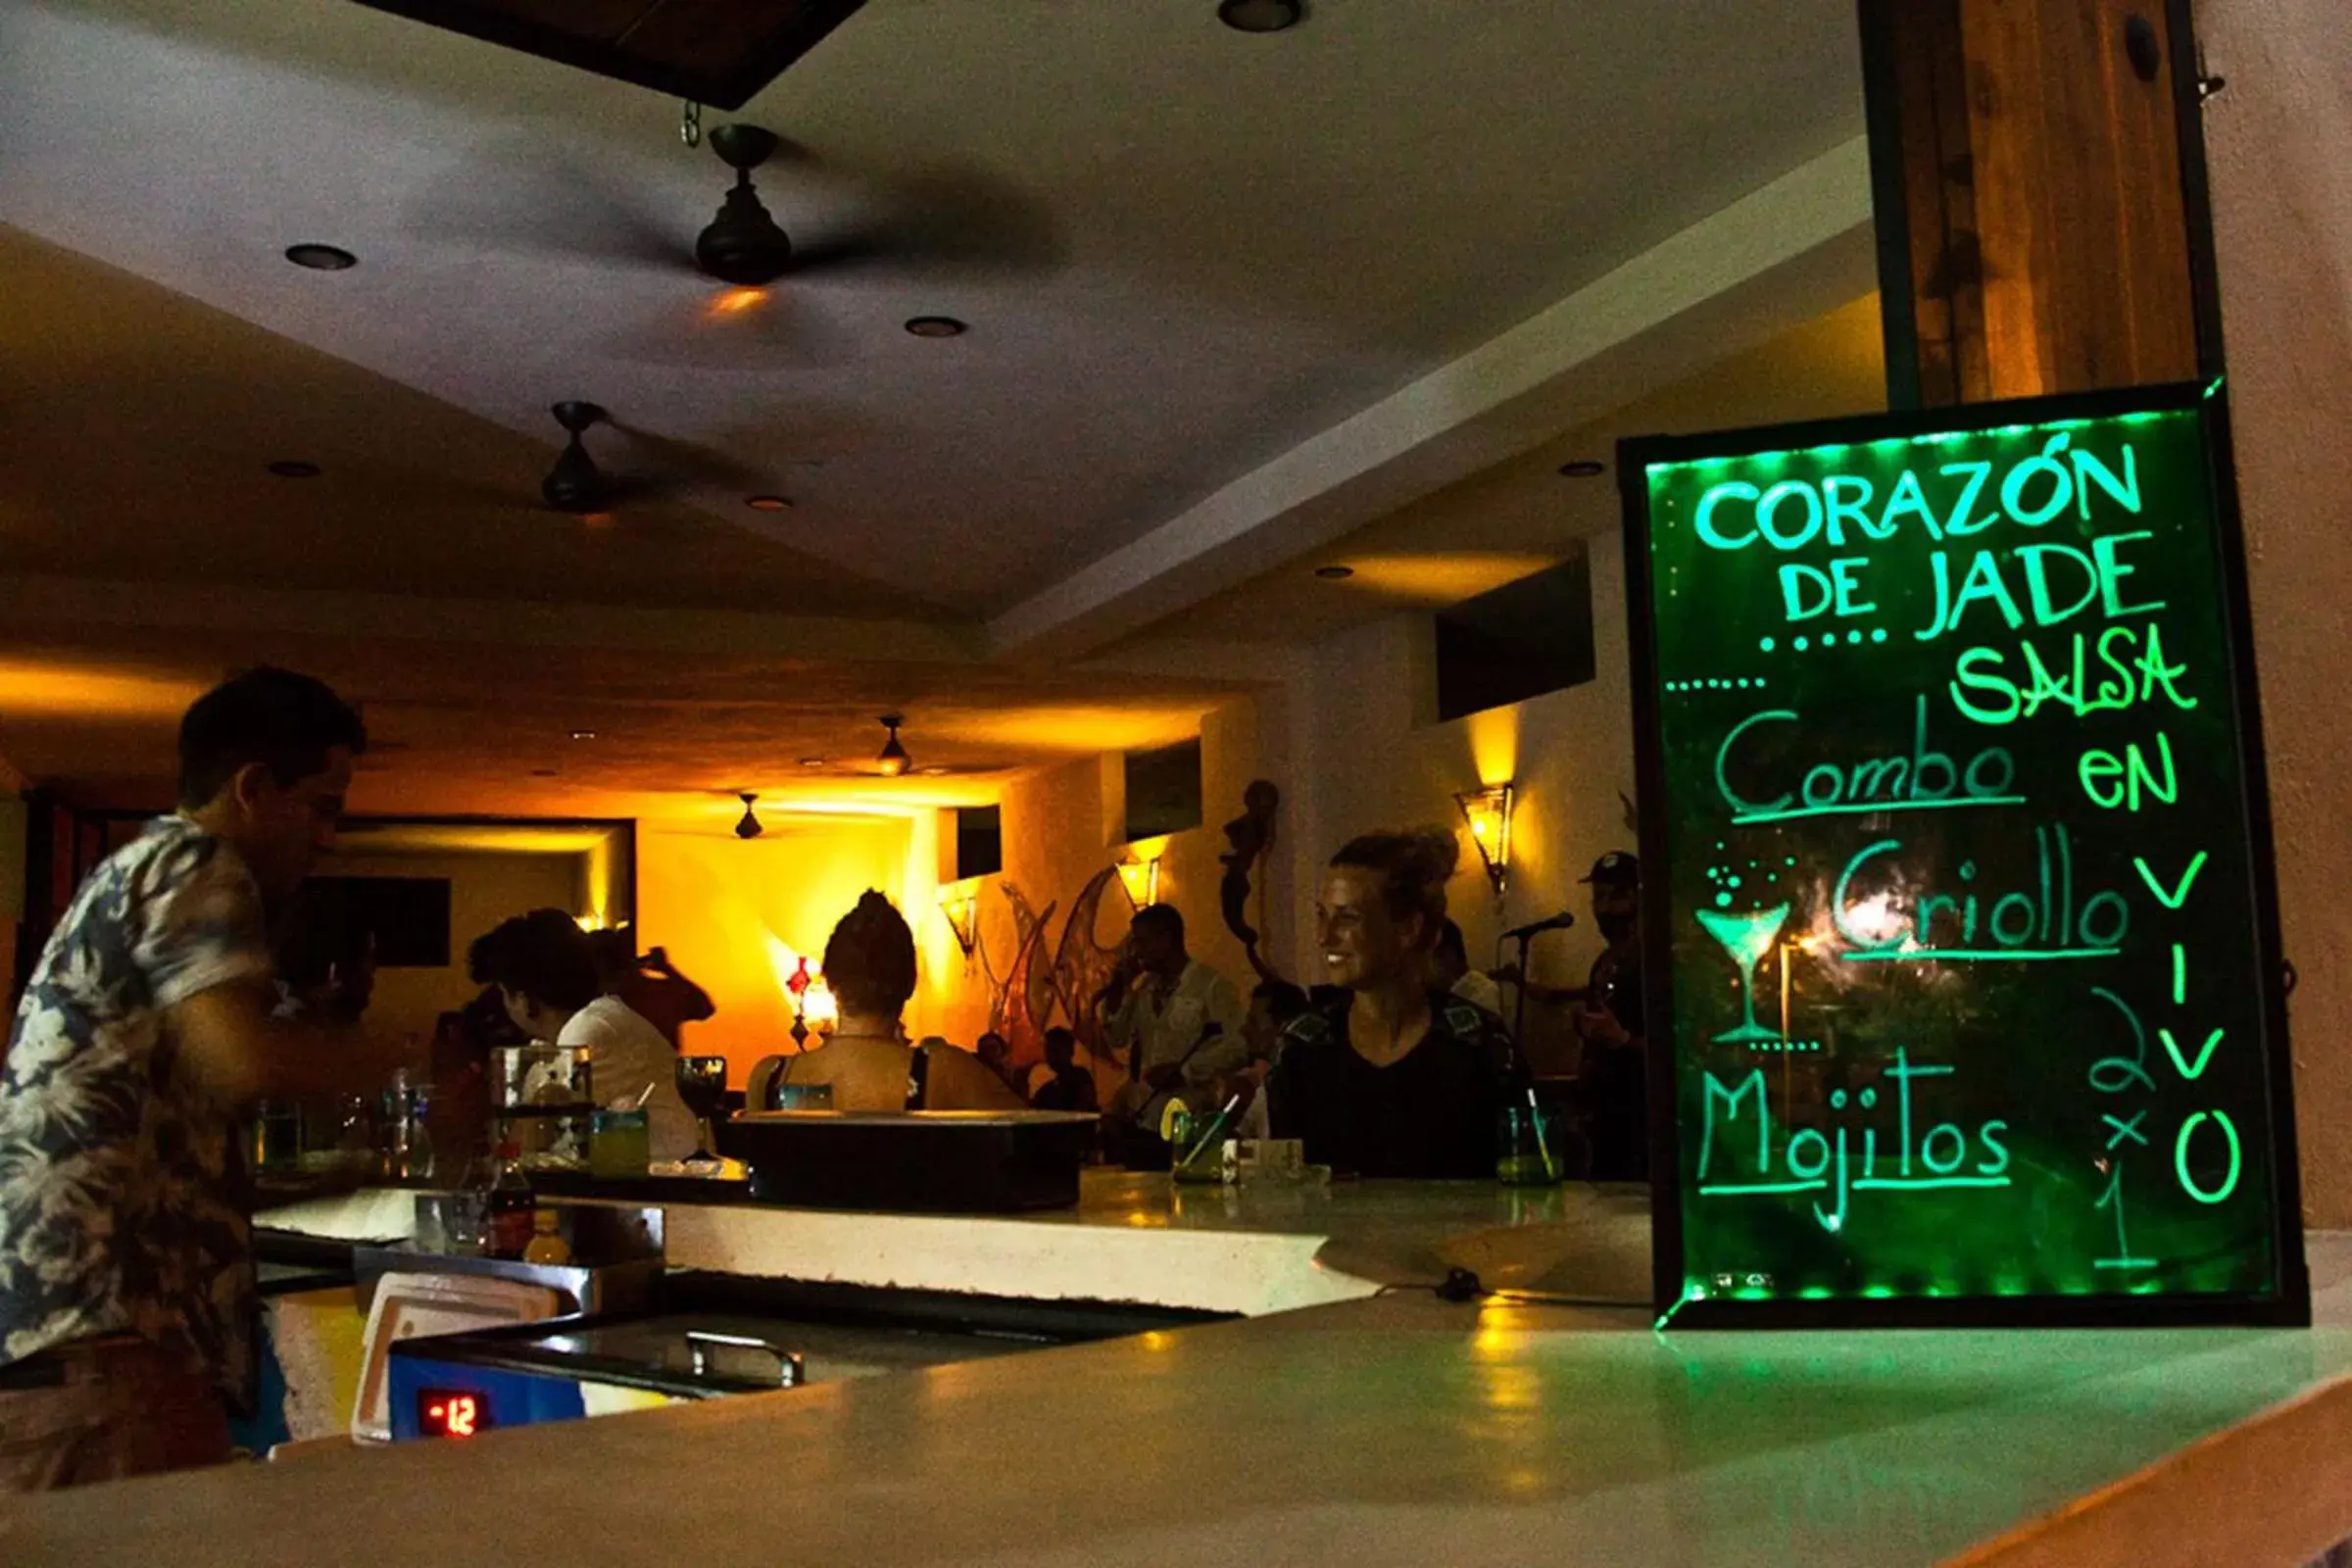 Restaurant/places to eat in Corazon De Jade